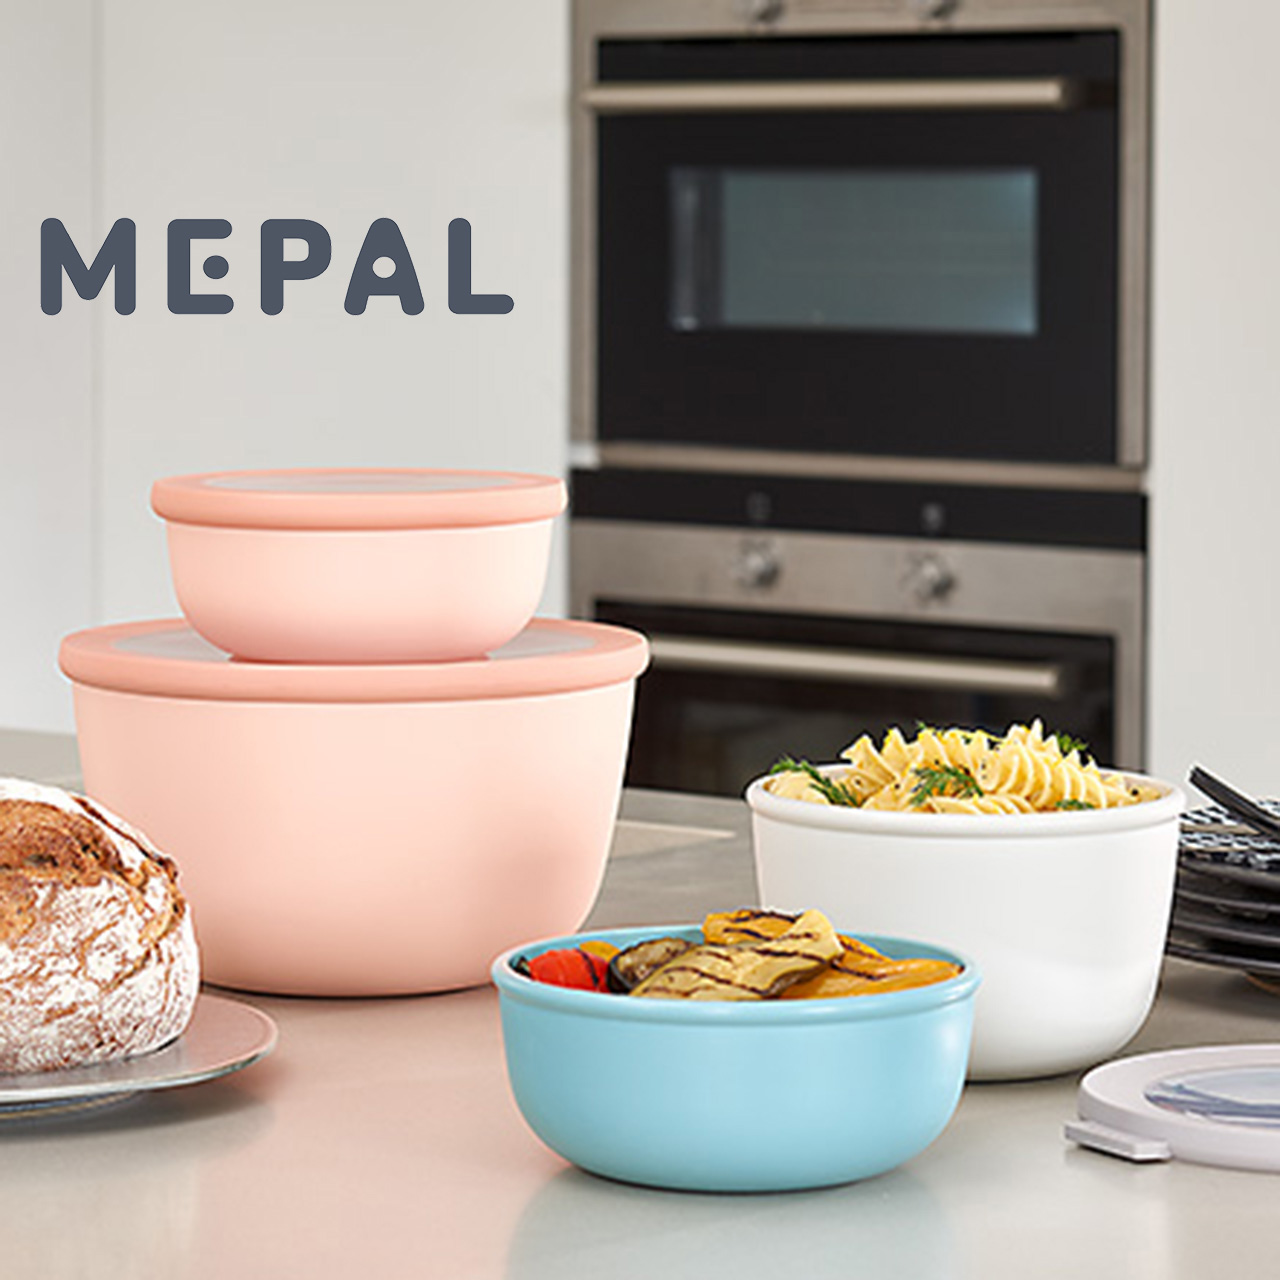 MEPAL,生活選物,生活雜貨,餐盒系列商品